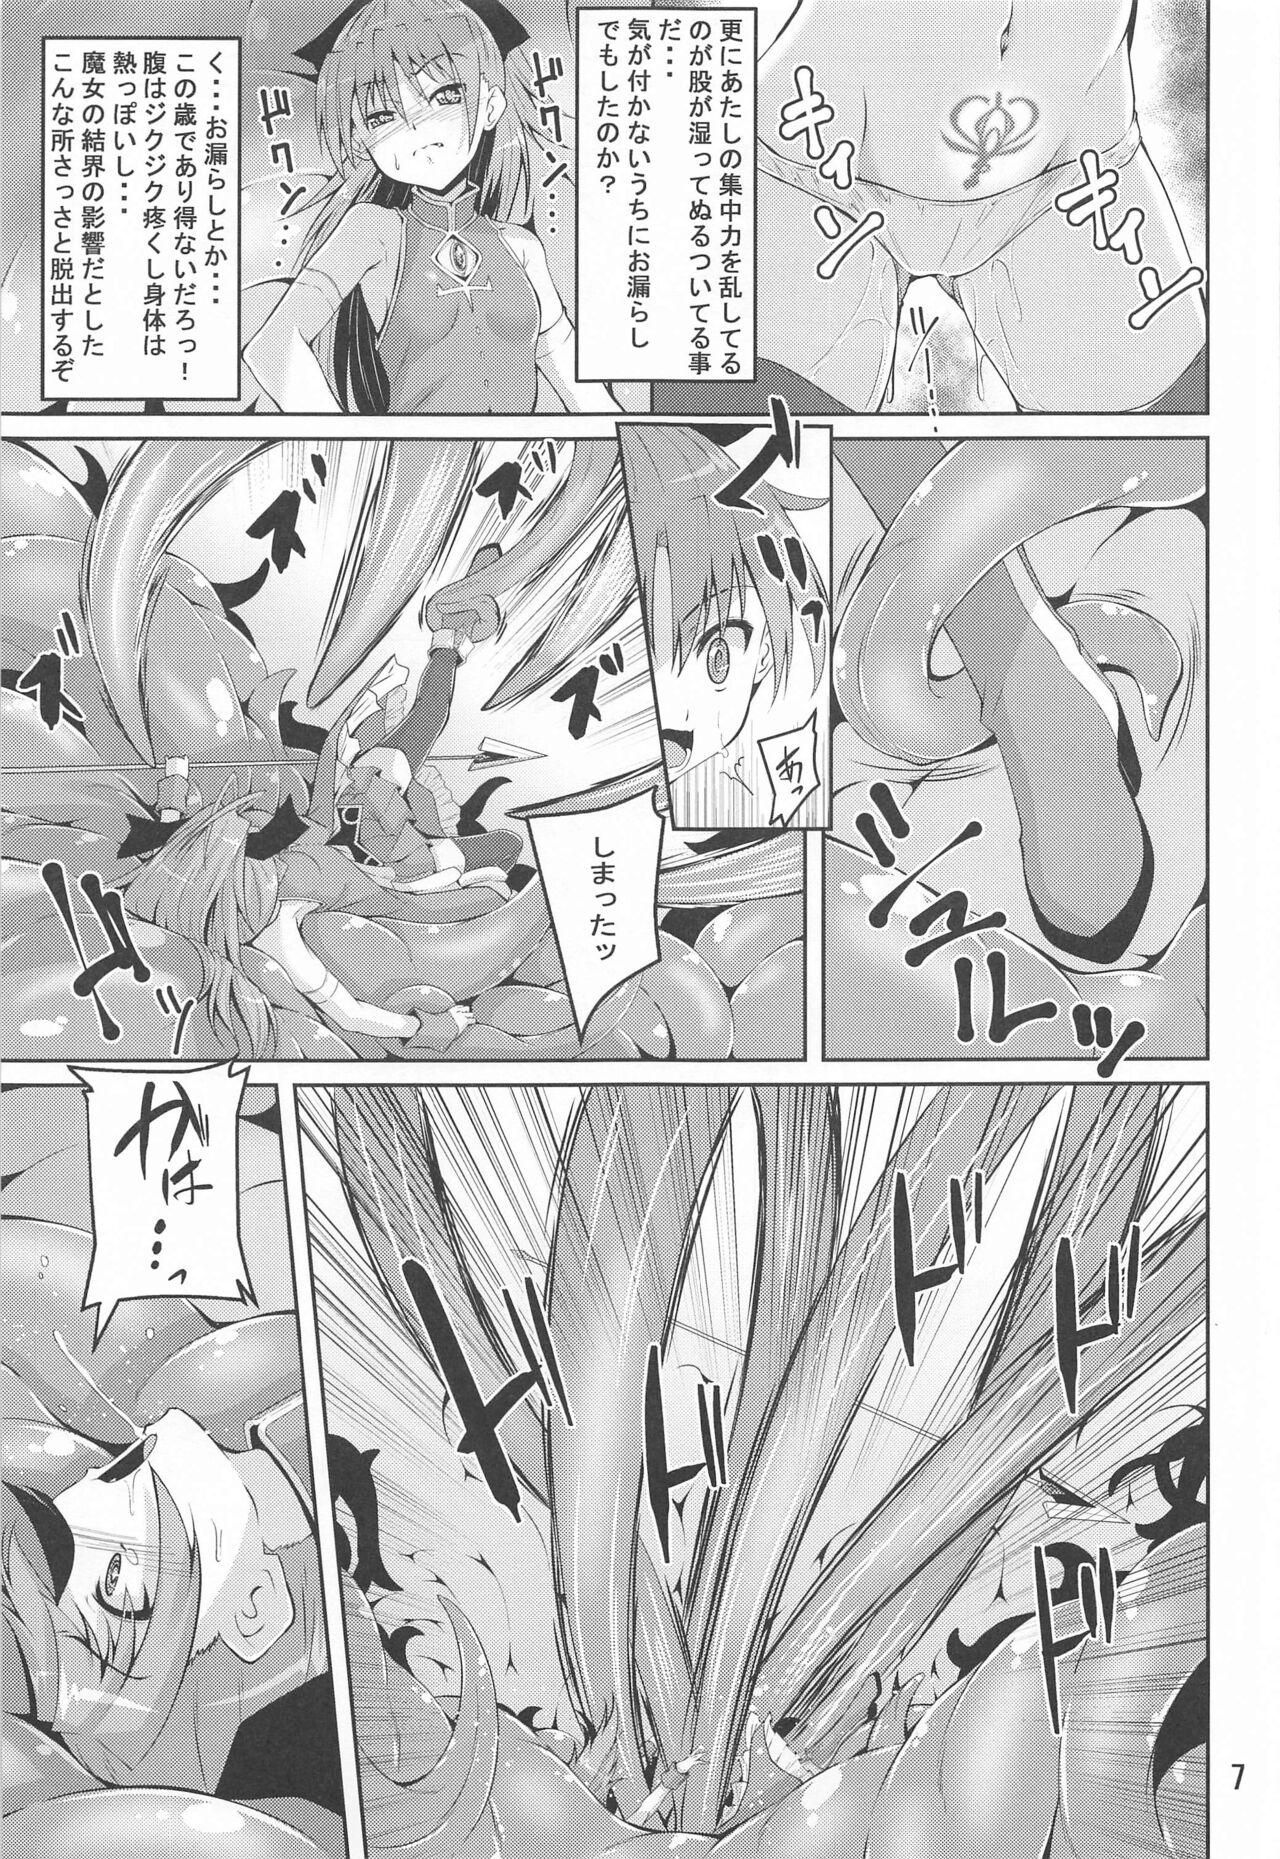 HD Kyouko Shokushuzeme no Hon - Puella magi madoka magica Adult - Page 6